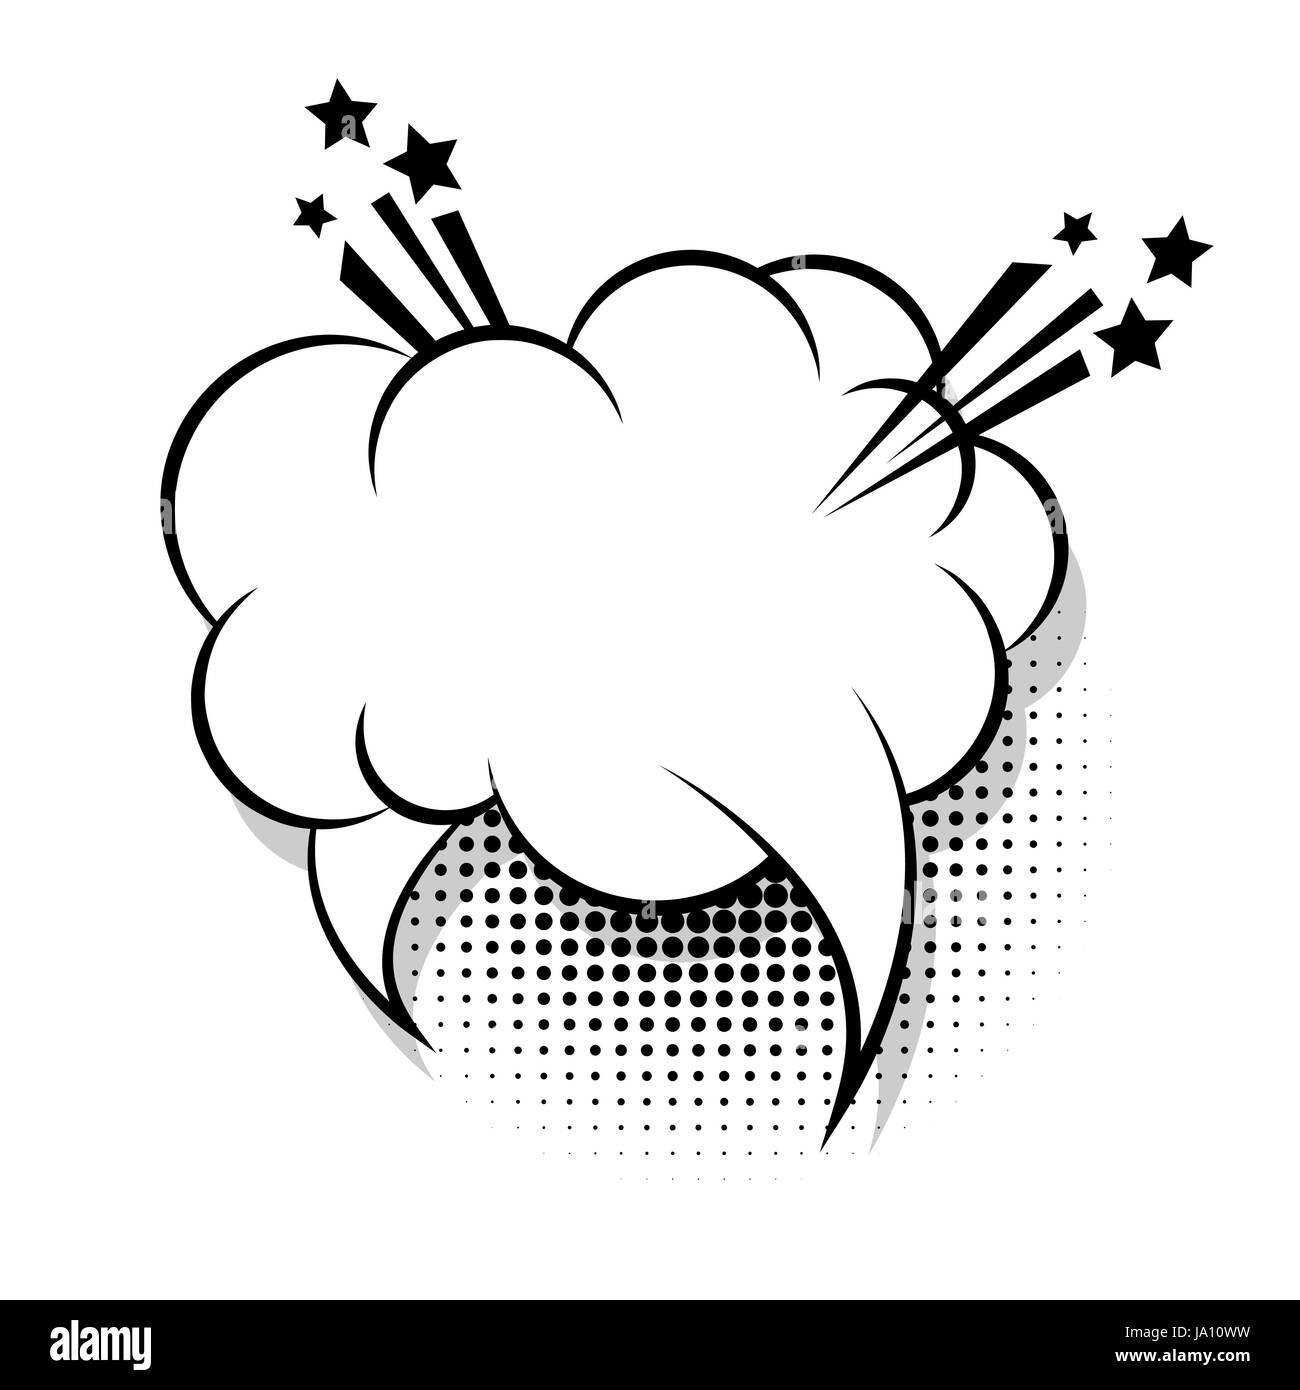 Nuvola Bianca Vuota Del Libro Di Fumetti Di Palloncino Testo Pop Art Icona A Forma Di Fumetto Frase Di Parlato Cartoon Divertente Etichetta Espressione Di Tag Boom Del Suono Effetti Di Esplosioni